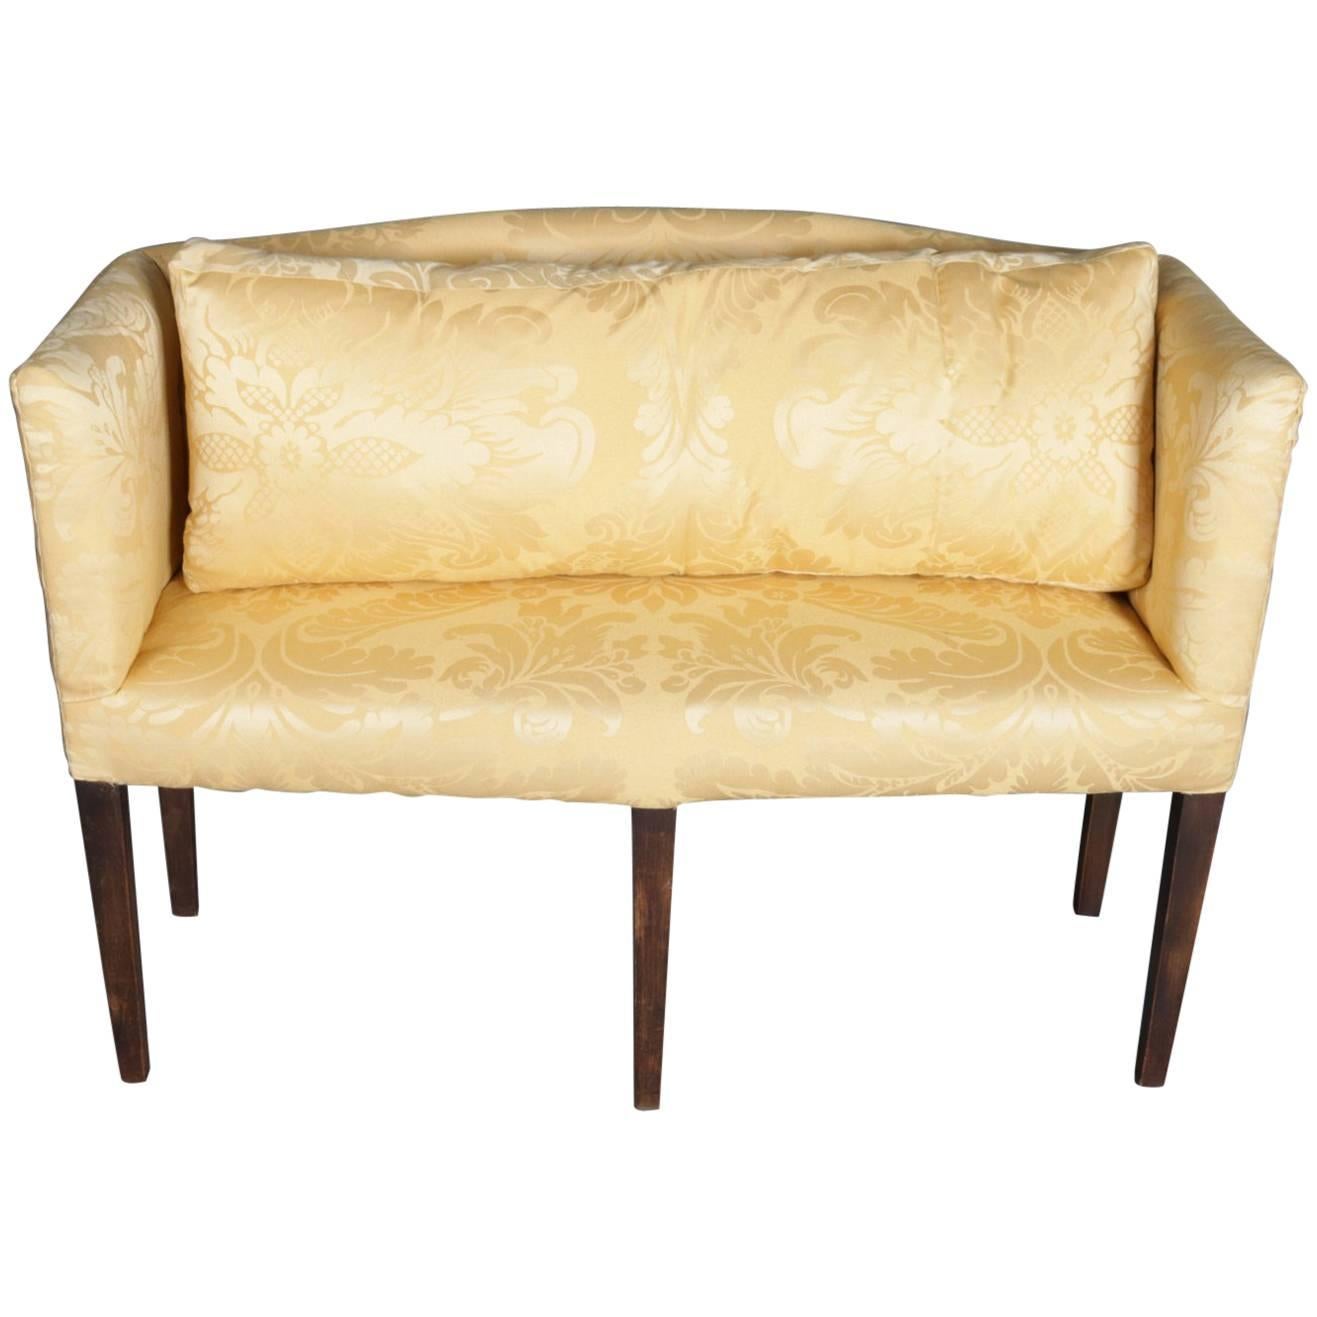 Antique English Hepplewhite Style Upholstered Mahogany Petite Settee